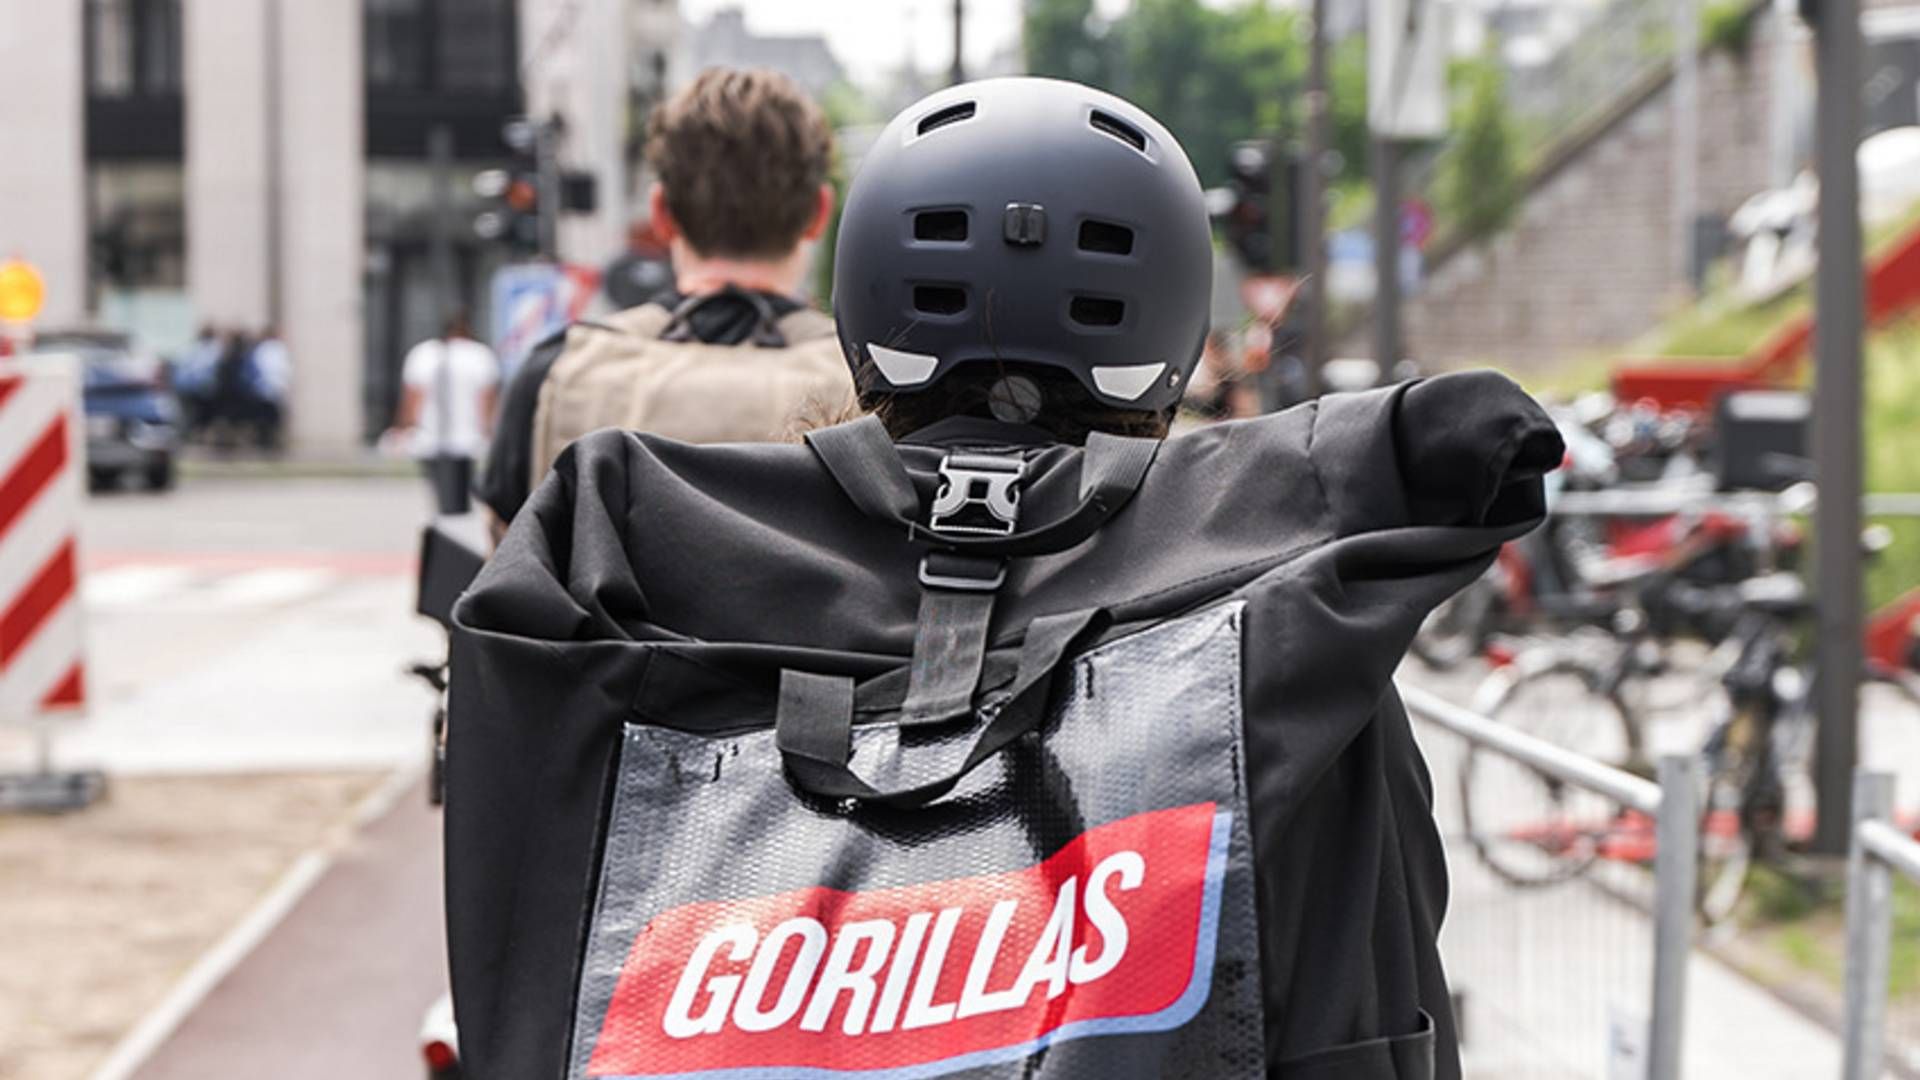 "Der er ikke styr på basale arbejdsforhold og på vores løn," siger Gorillas-bud til Politiken. | Foto: PR / Gorillas